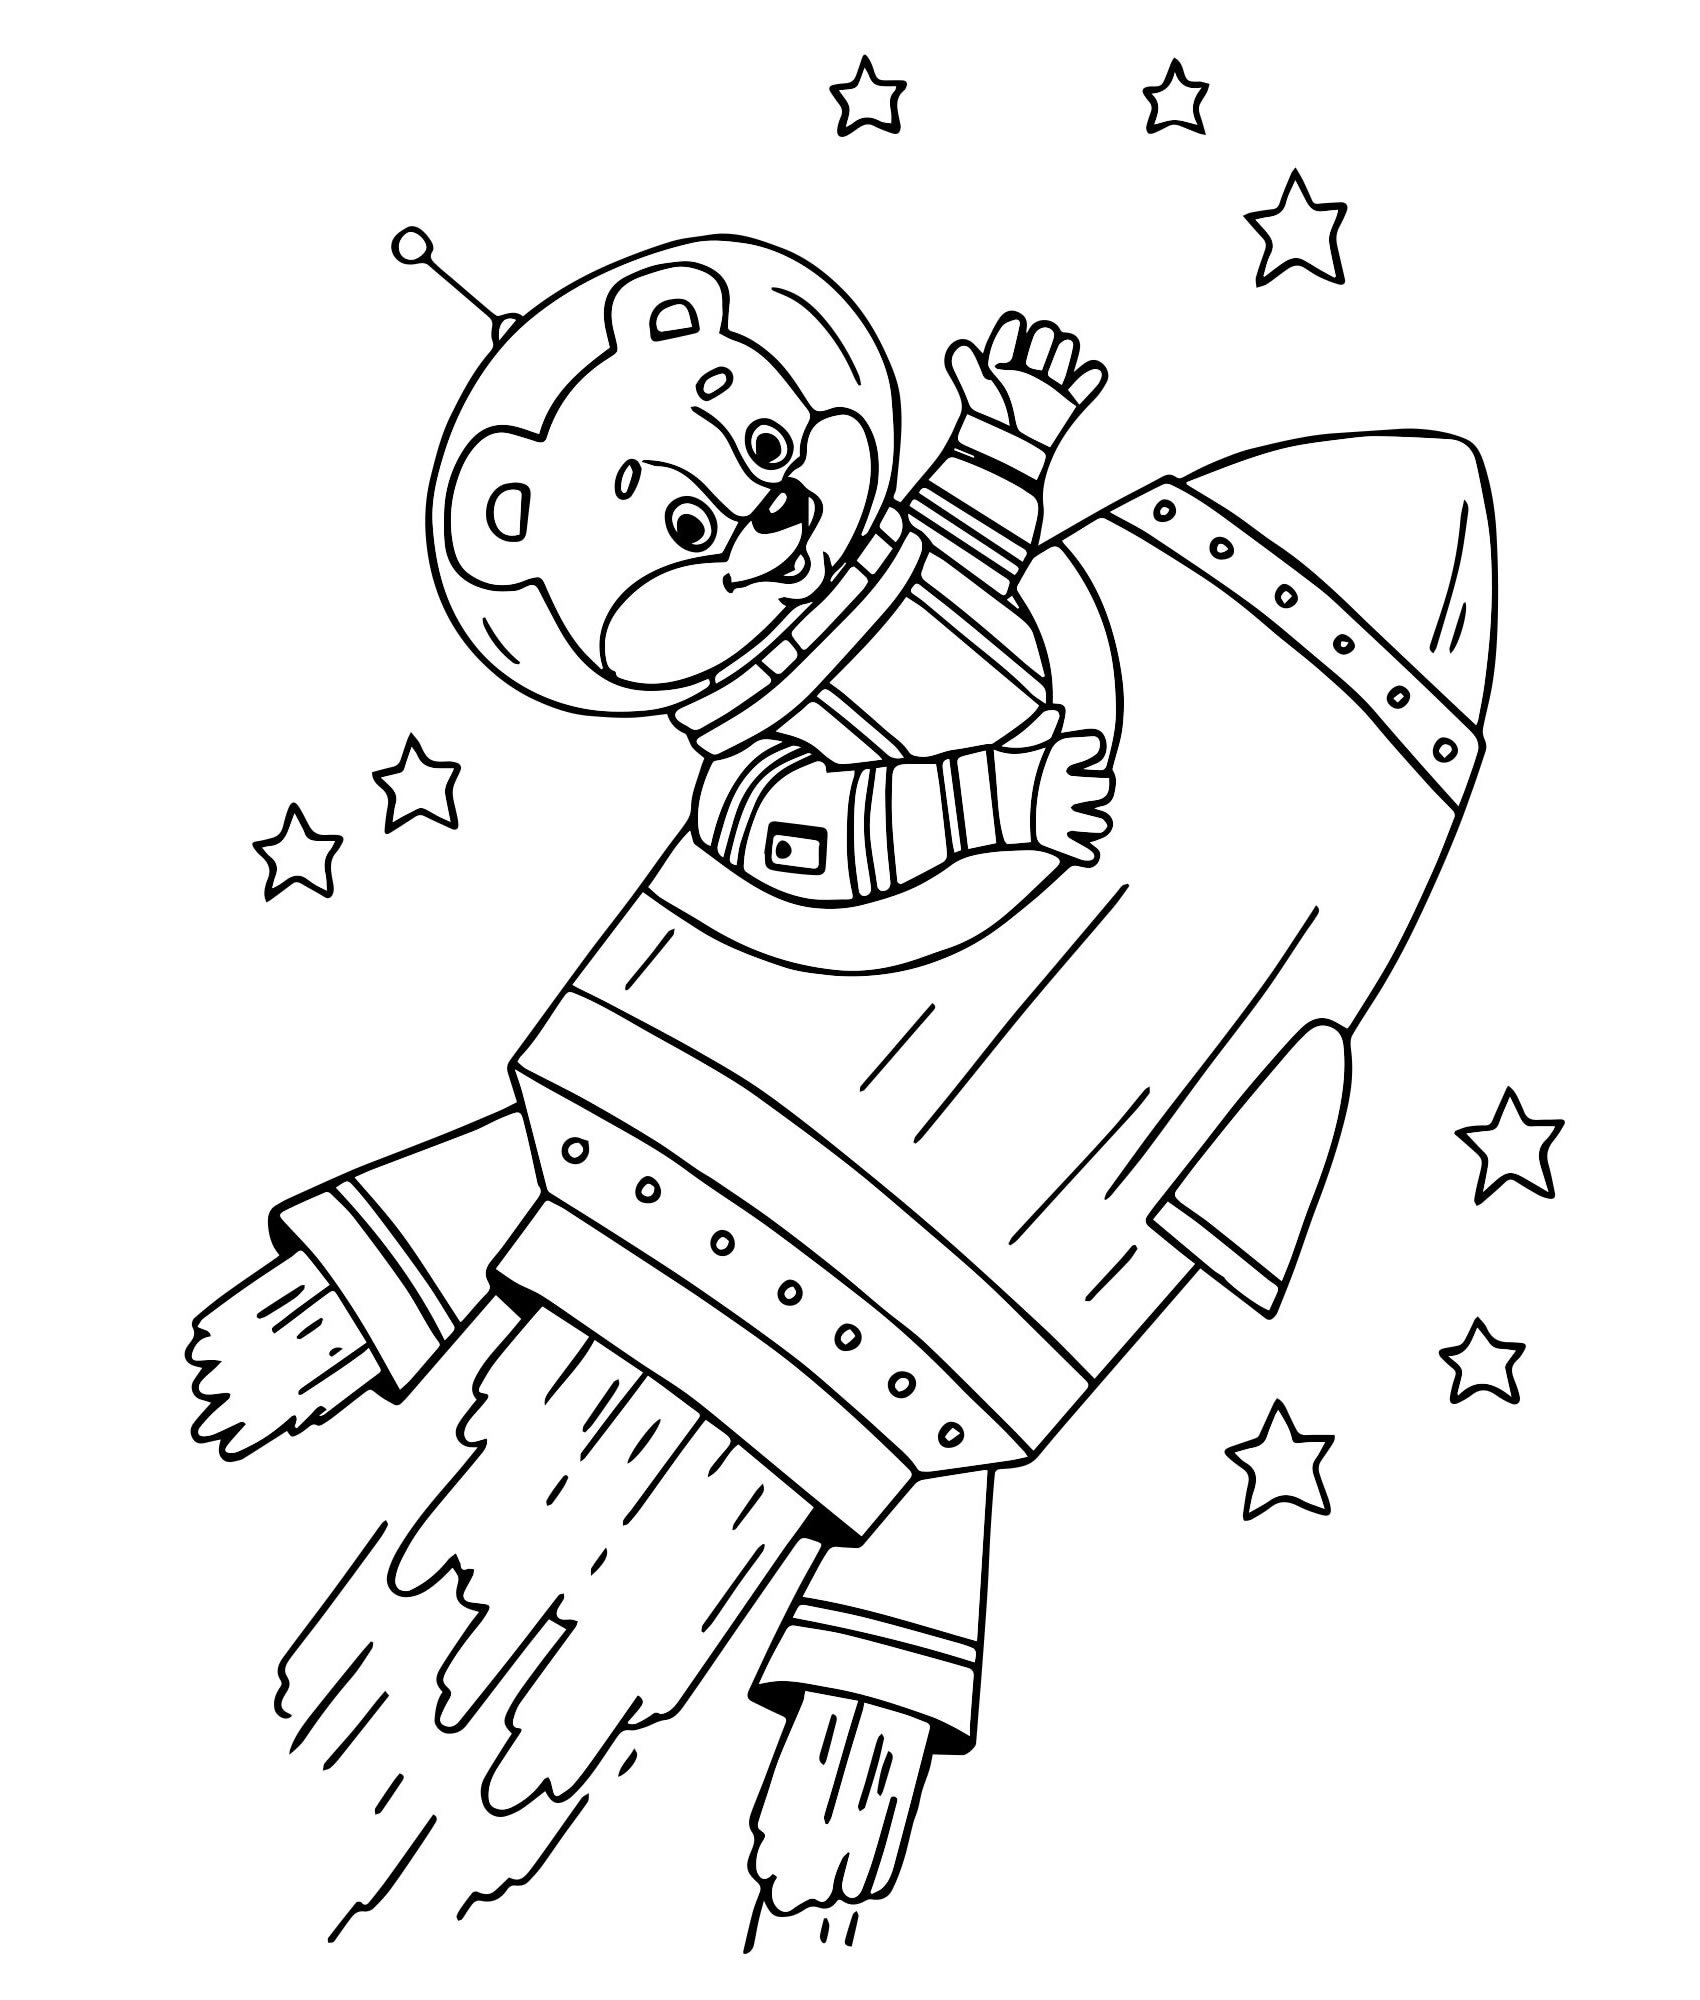 Раскраски к дню космонавтики для детей распечатать. Раскраска. В космосе. Космонавт раскраска для детей. Раскраски ко Дню космонавтики. Космос раскраска для детей.